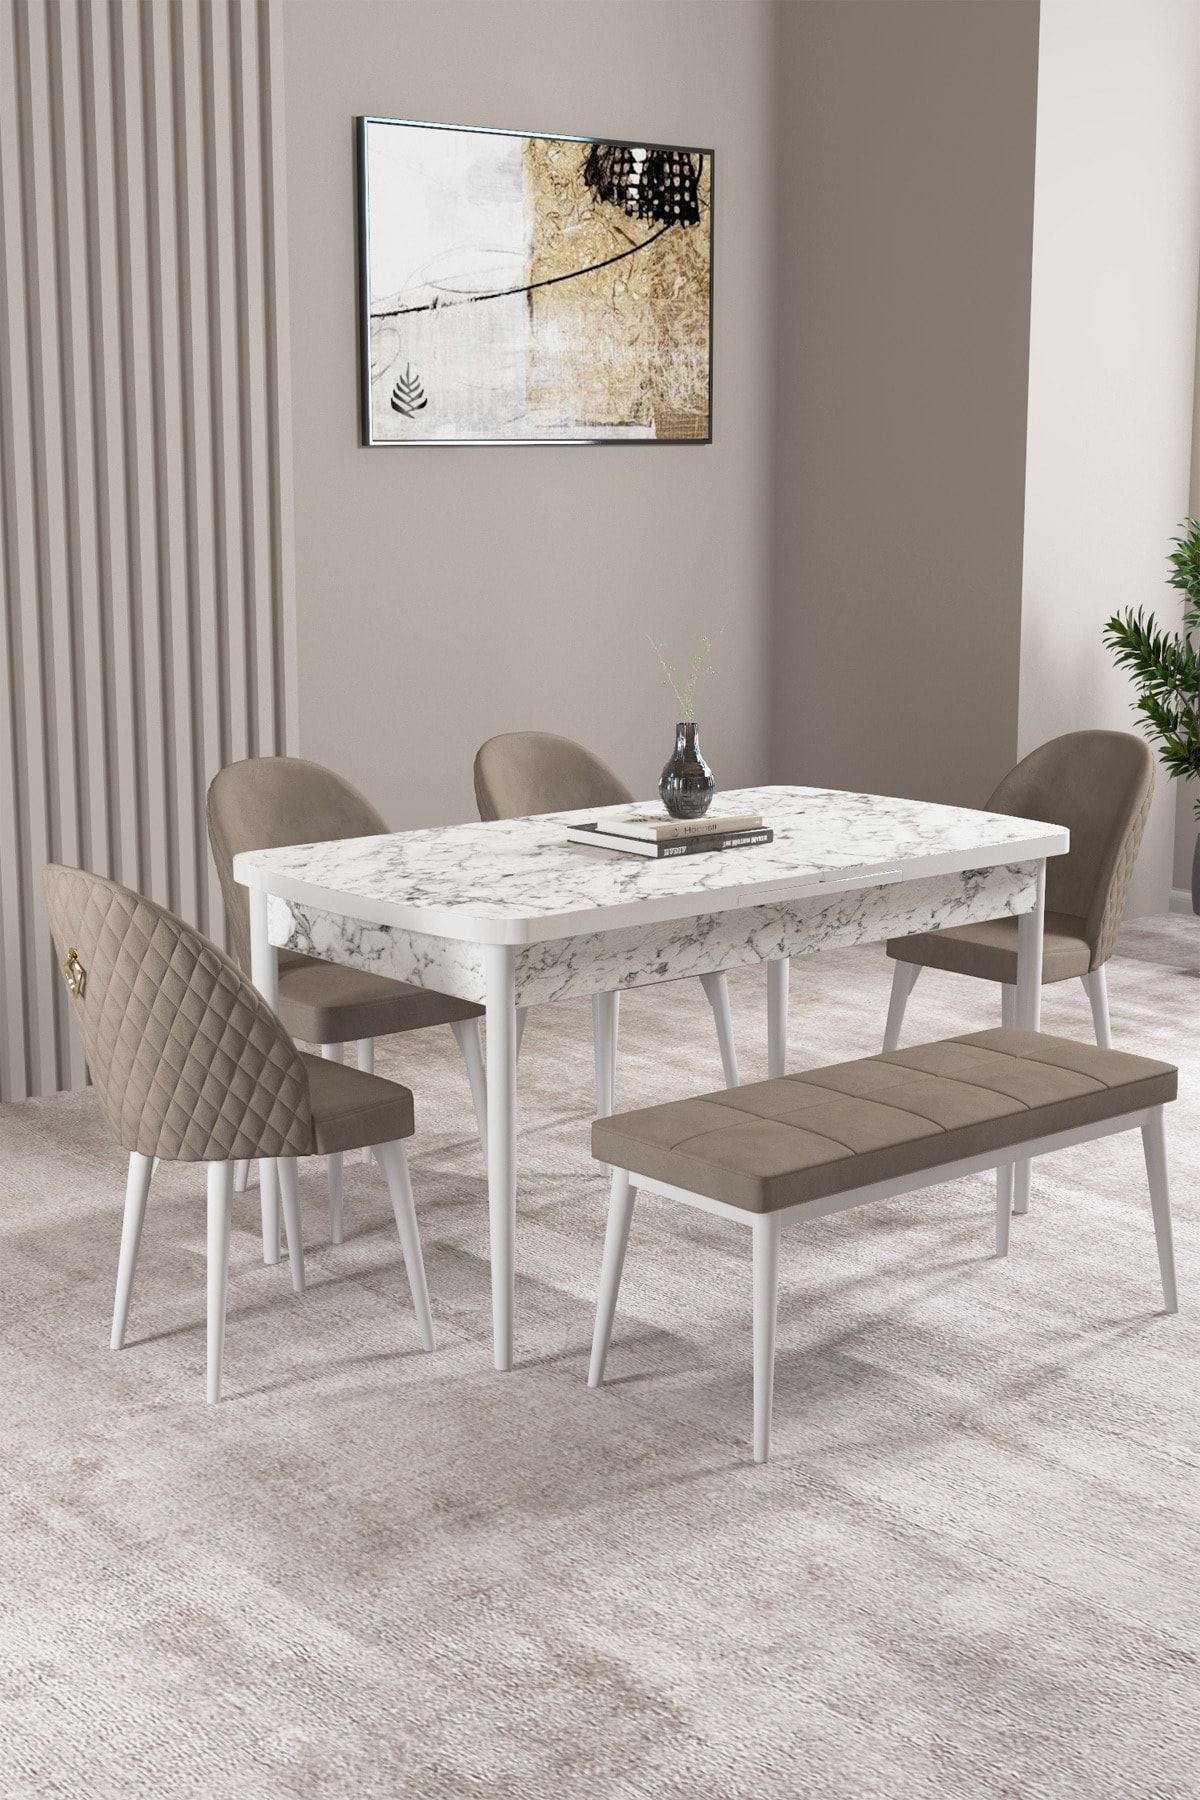 hoopsii Milas Beyaz Mermer Desen 80x132 Mdf Açılabilir Yemek Masası Takımı 4 Sandalye, 1 Bench